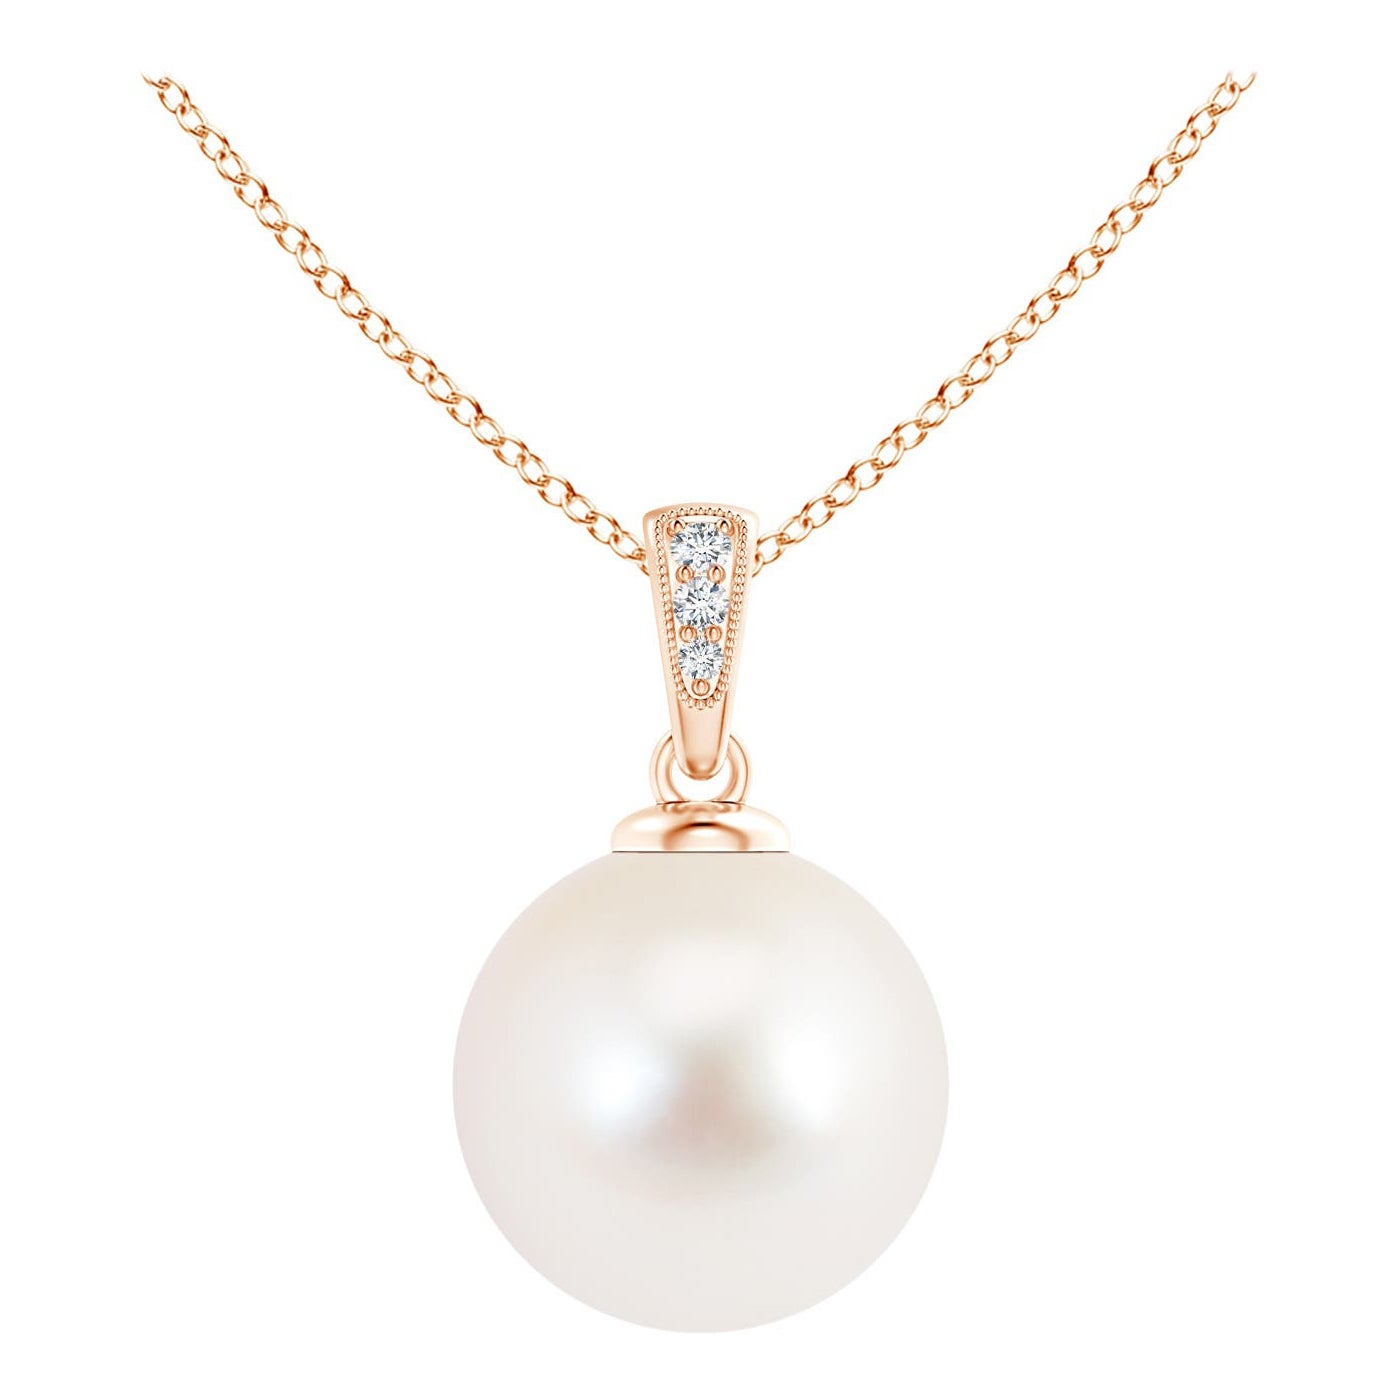 Pendentif solitaire en or rose 14 carats avec perles de culture d'eau douce et diamants